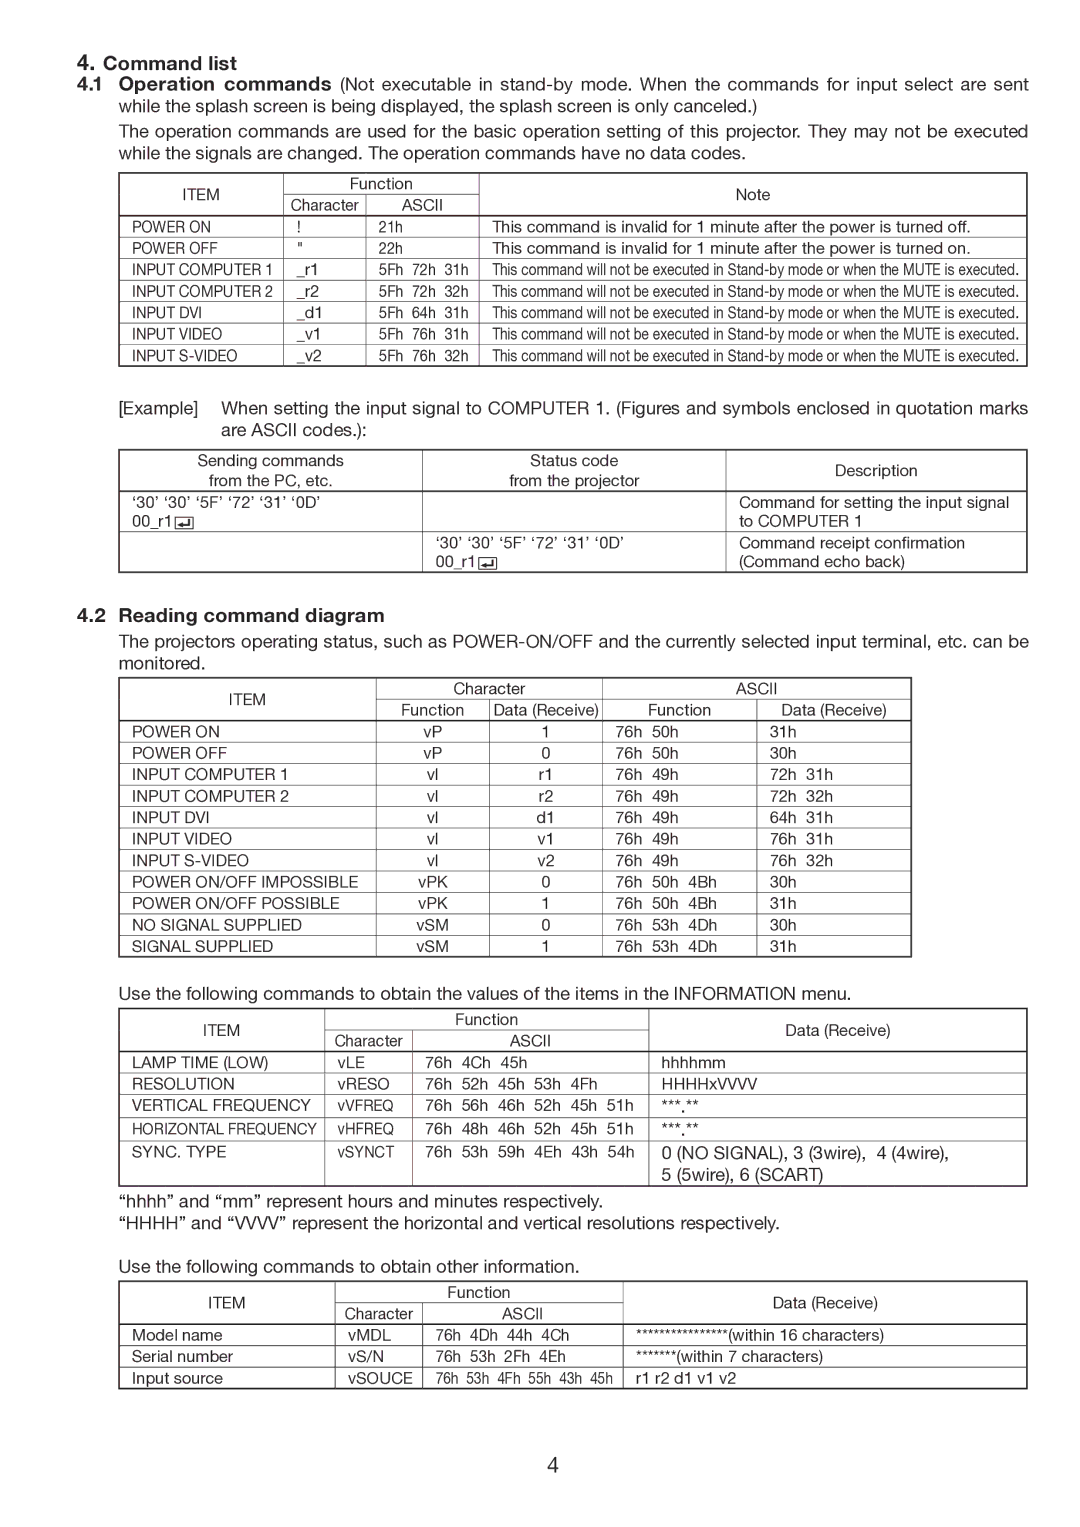 Mitsubishi Electronics FL7000LU, FL7000U manual Command list, Reading command diagram 